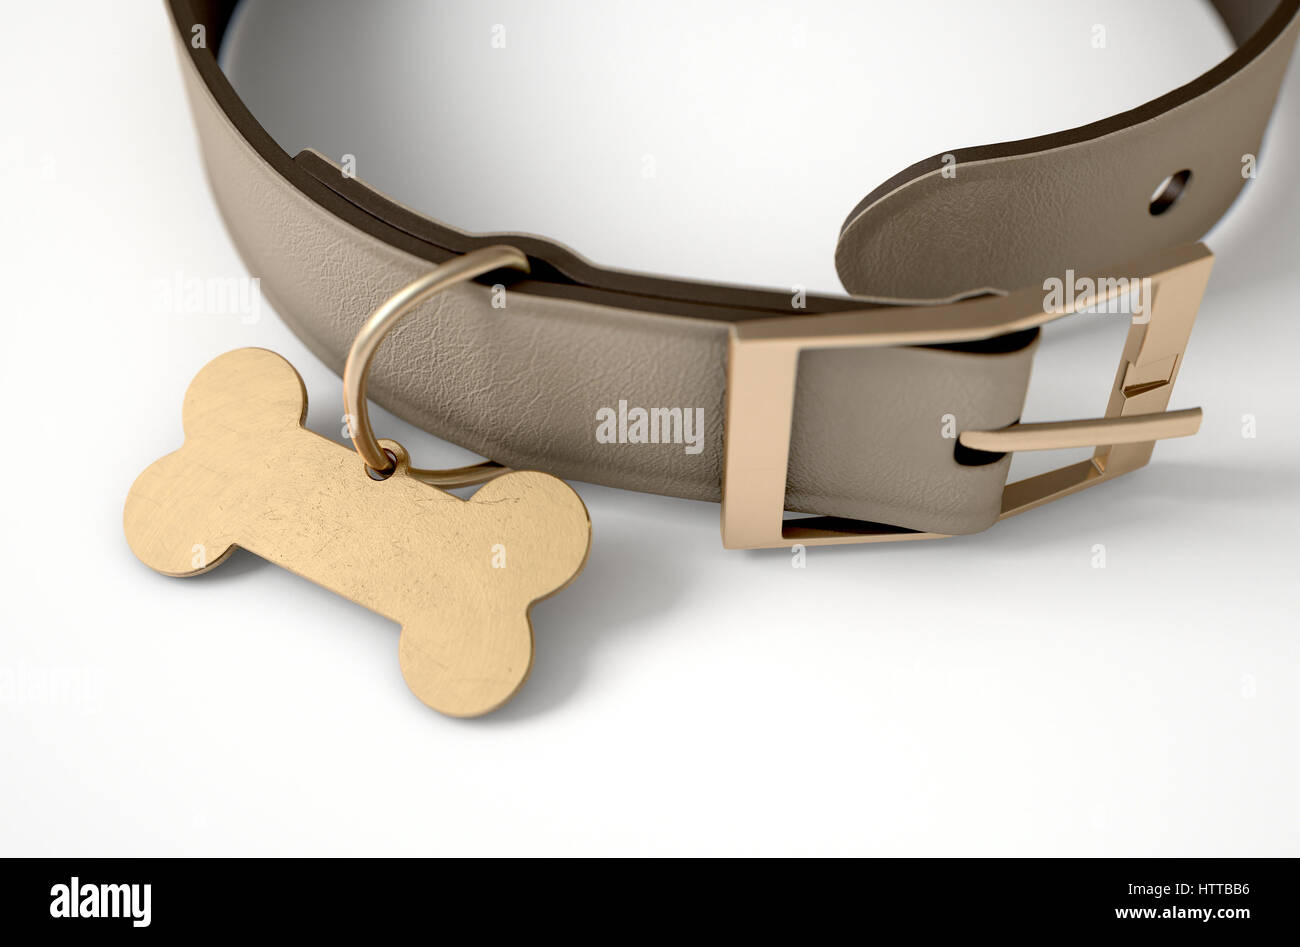 Un collier pour chien en cuir marron avec une étiquette d'identification en forme d'os en laiton isolé sur un fond blanc studio - 3D render Banque D'Images